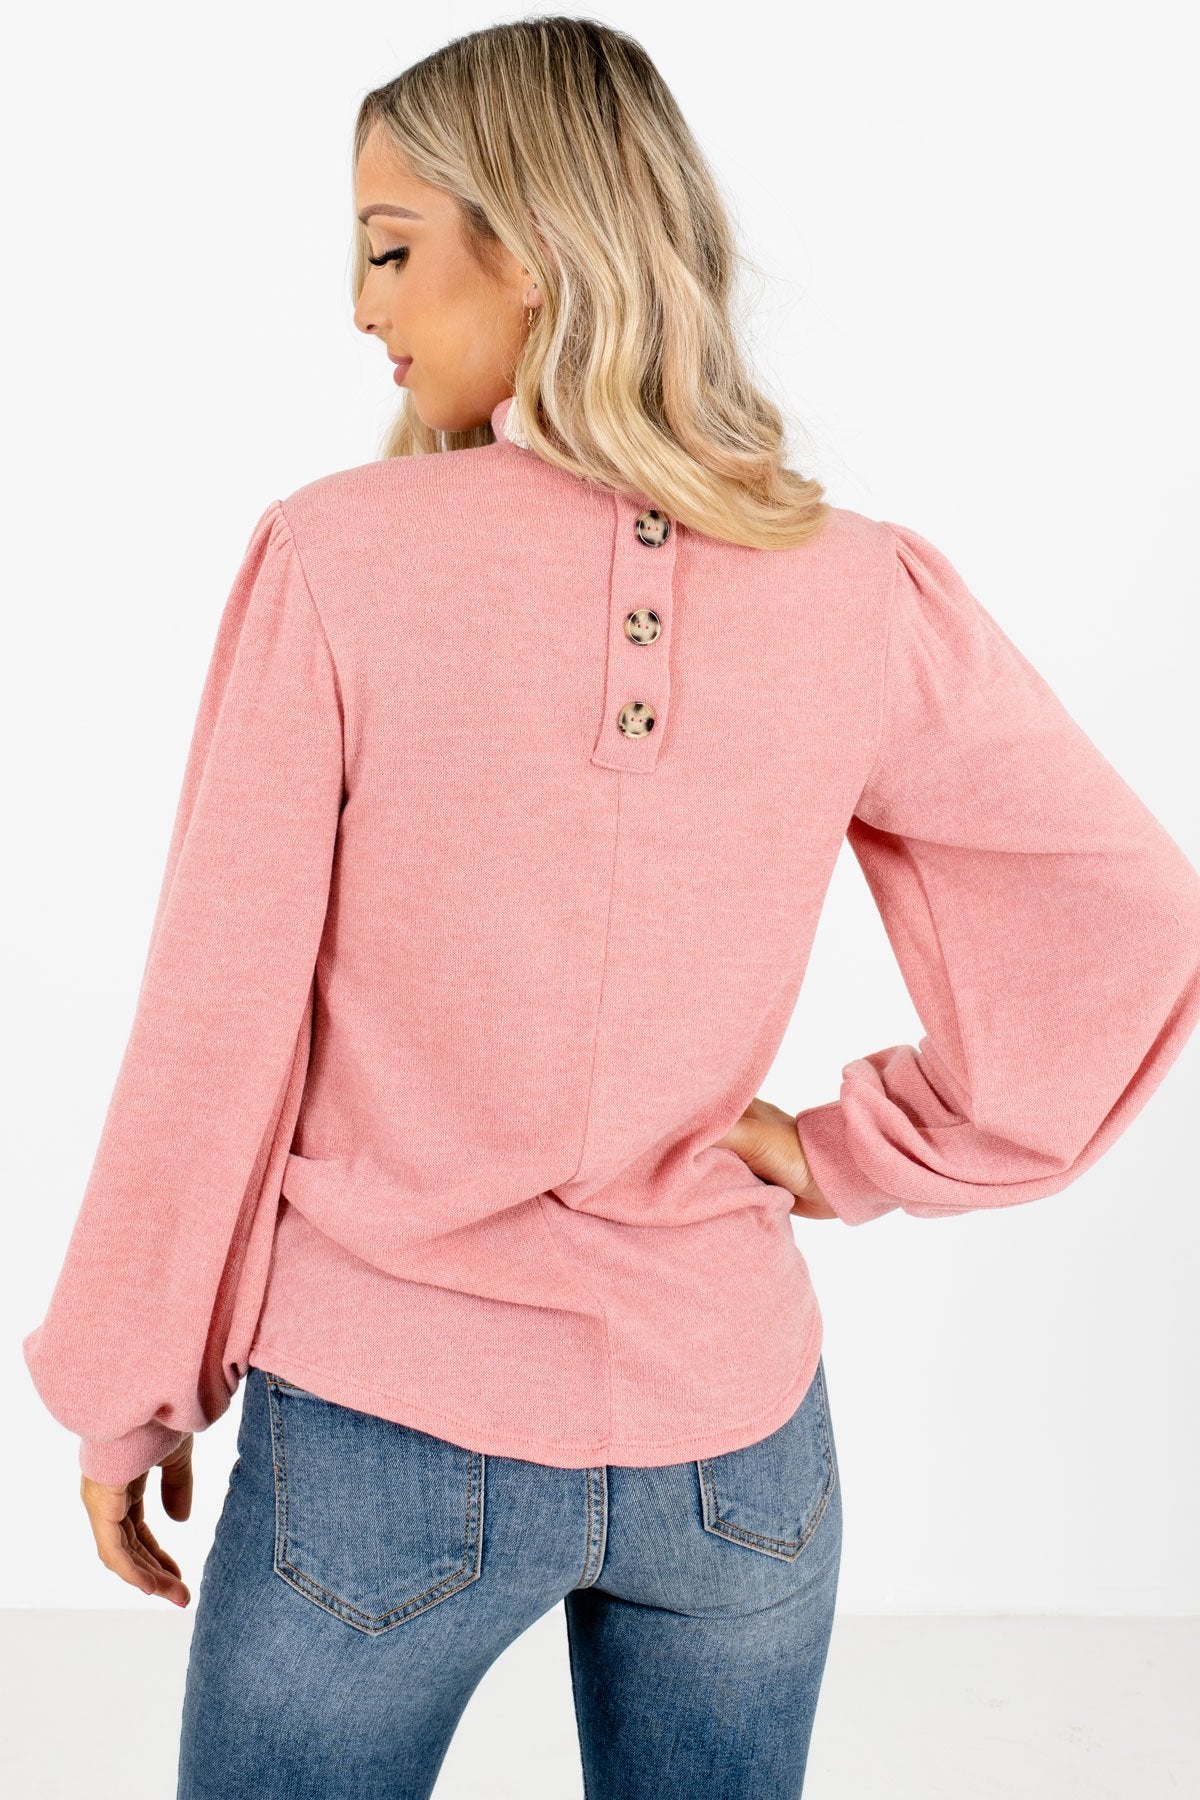 Women’s Pink Decorative Button Boutique Top